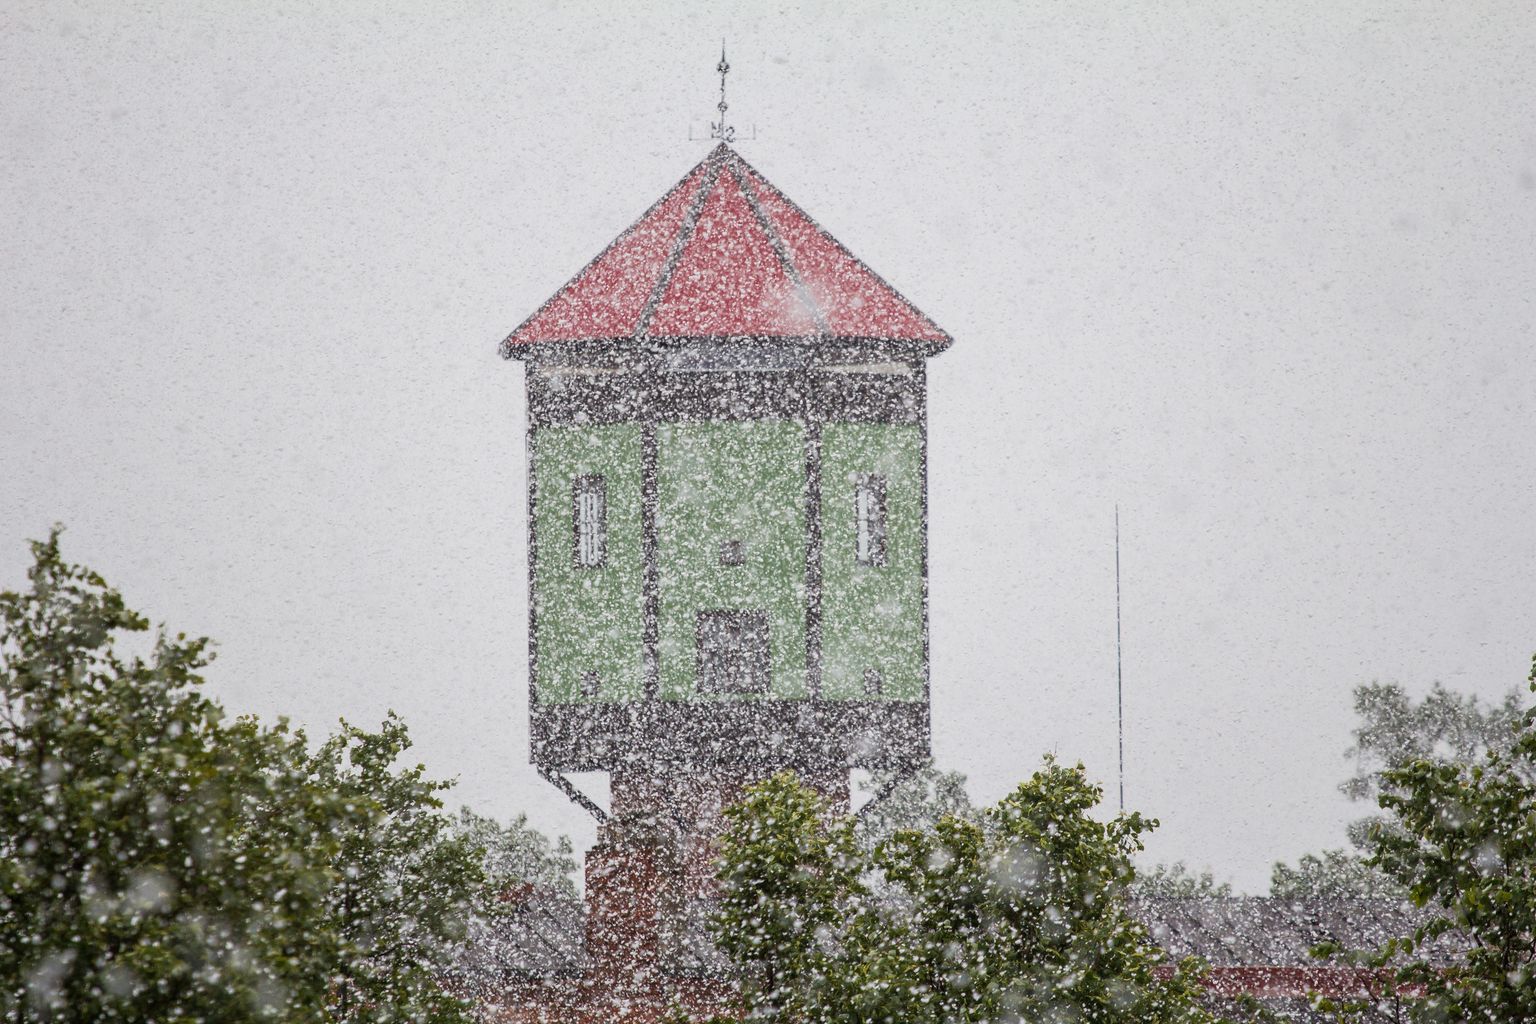 Vahel võib ka juunikuu lumega üllatada: meenutus 2014. aasta suvest Viljandis.